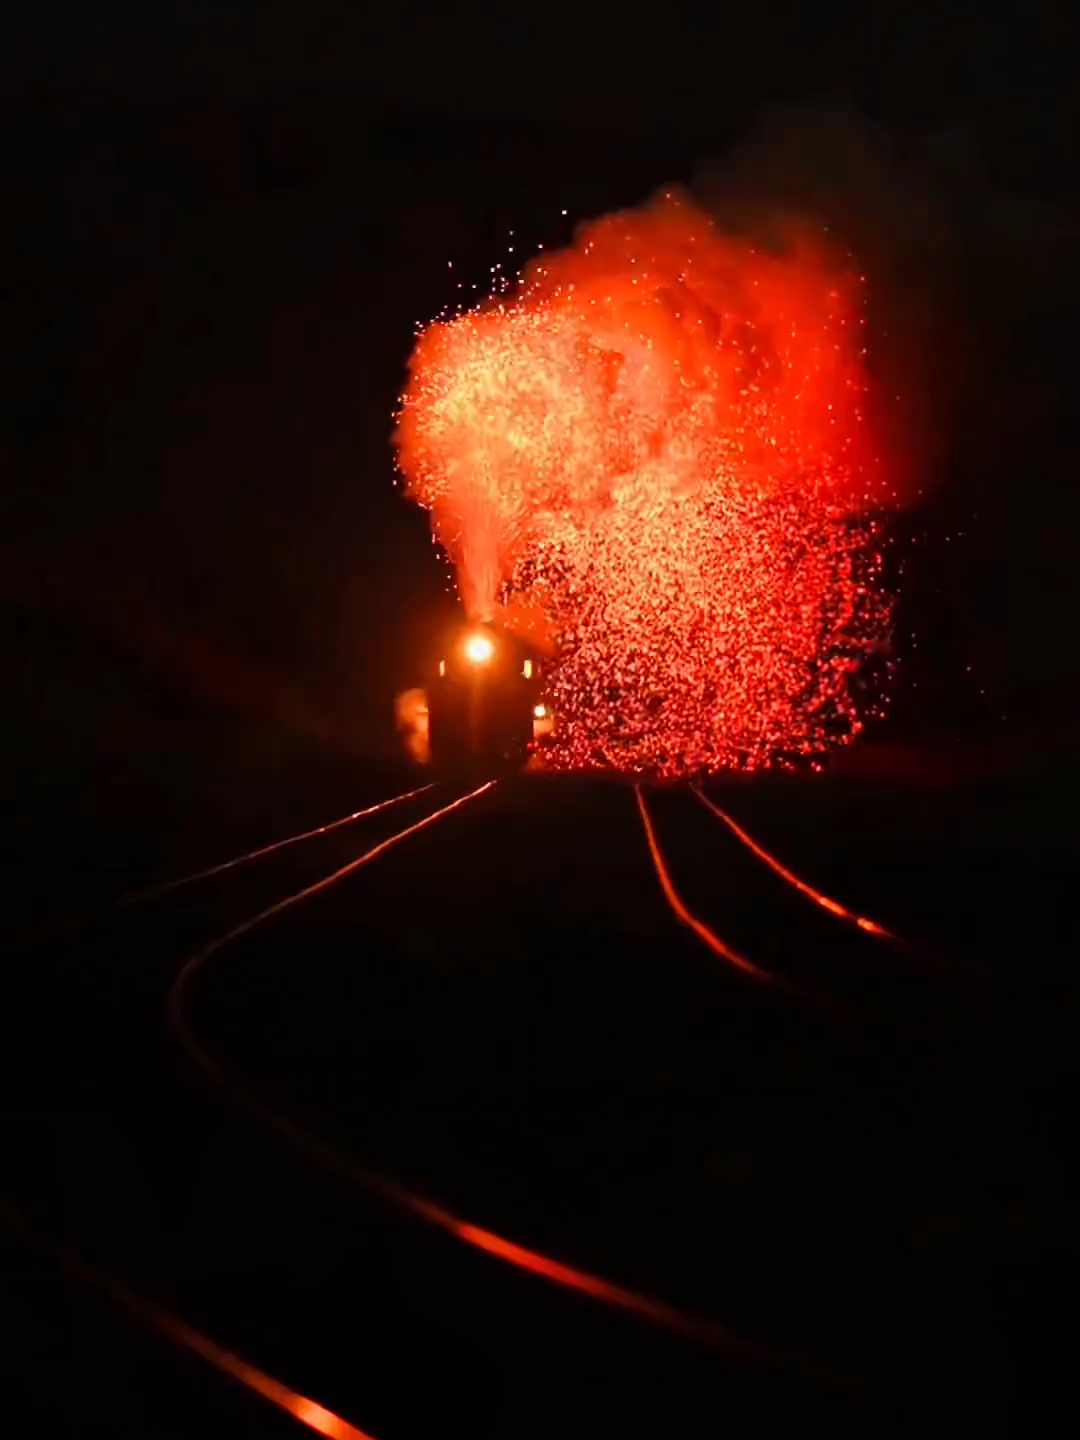 这才是火车，一路火花带闪电，看什么烟花，来哈密看火车就行了